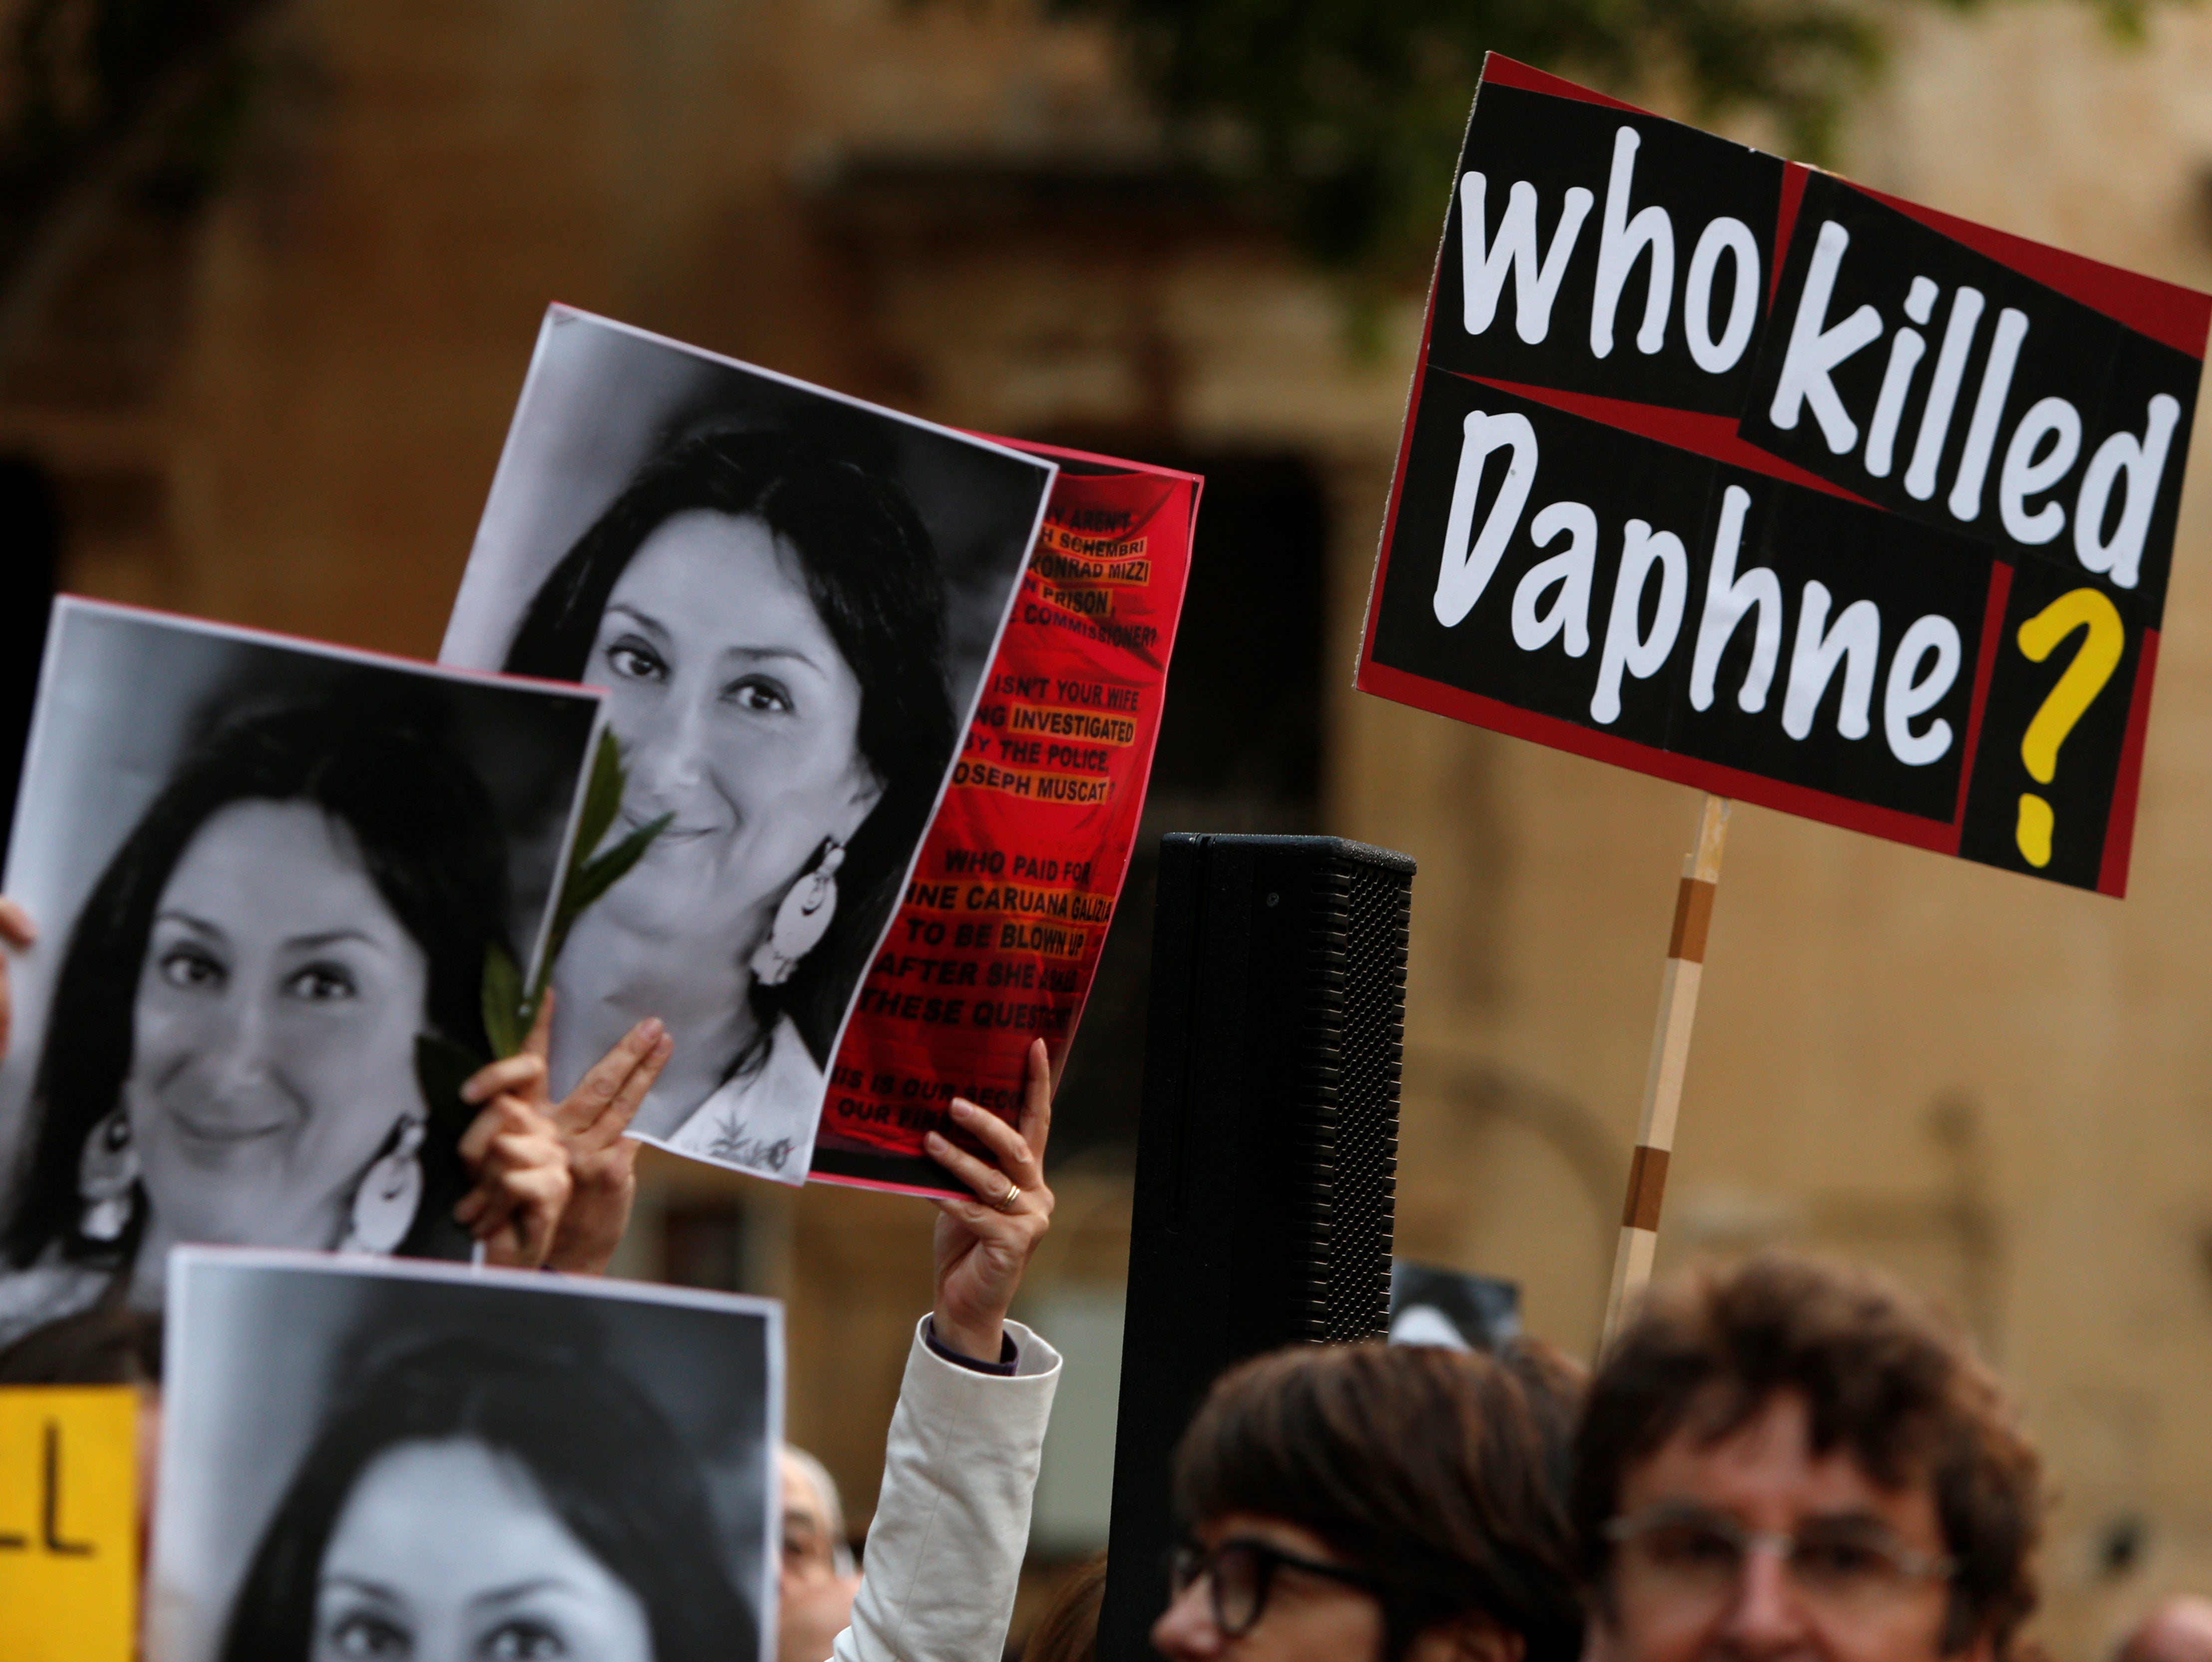 Council of Europe calls on Malta to open public inquiry into murder of Daphne Caruana Galizia